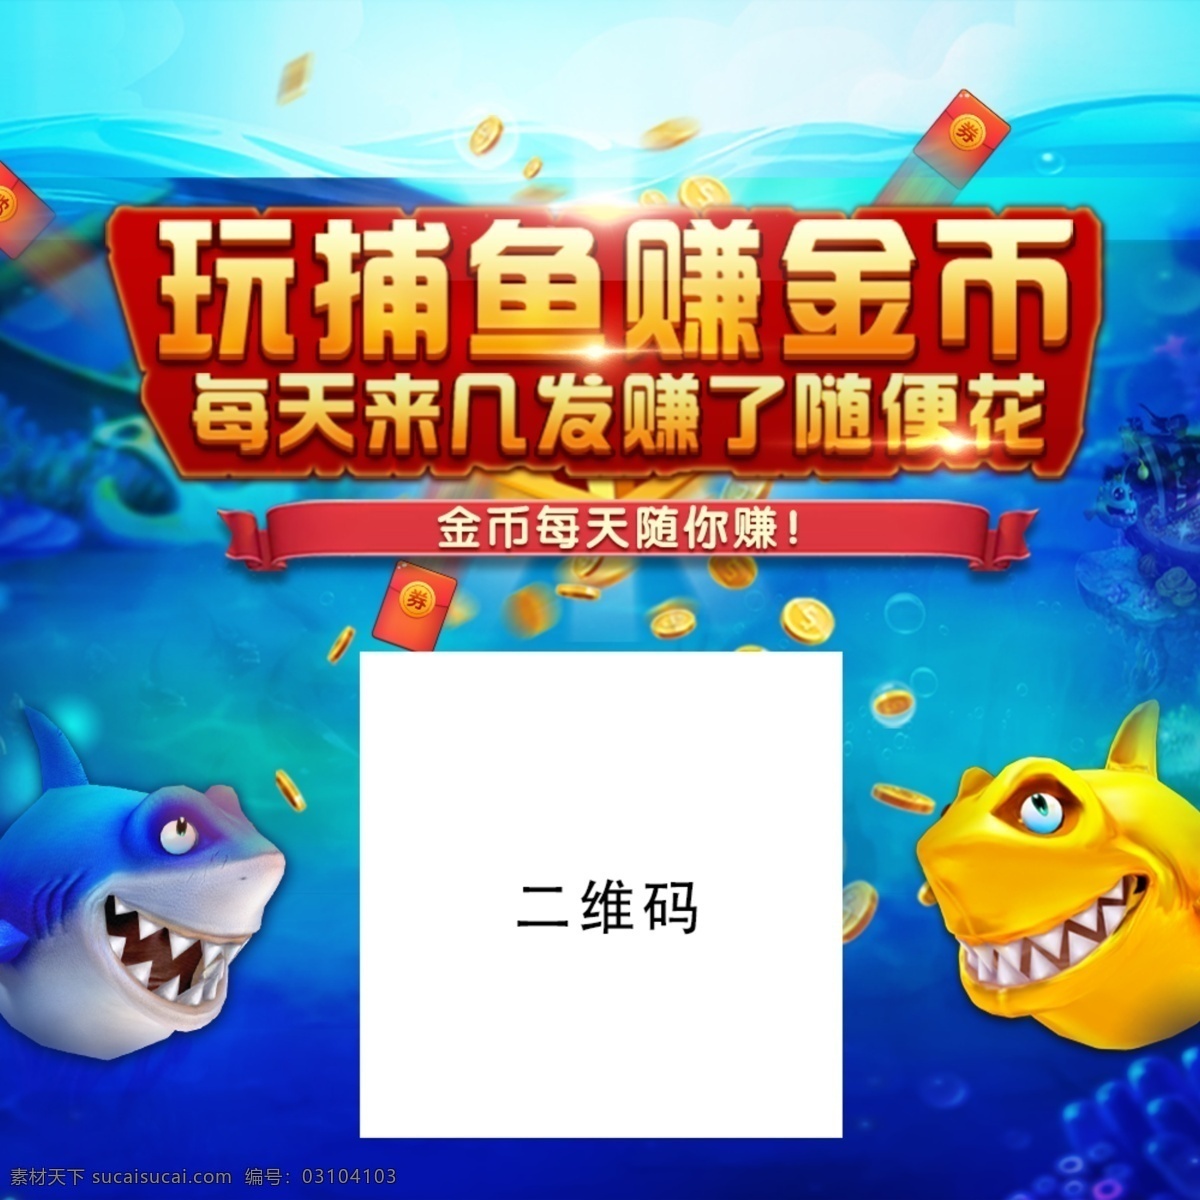 捕鱼 游戏 宣传 banner 宣传图 棋牌 海报 二维码 移动界面设计 游戏界面